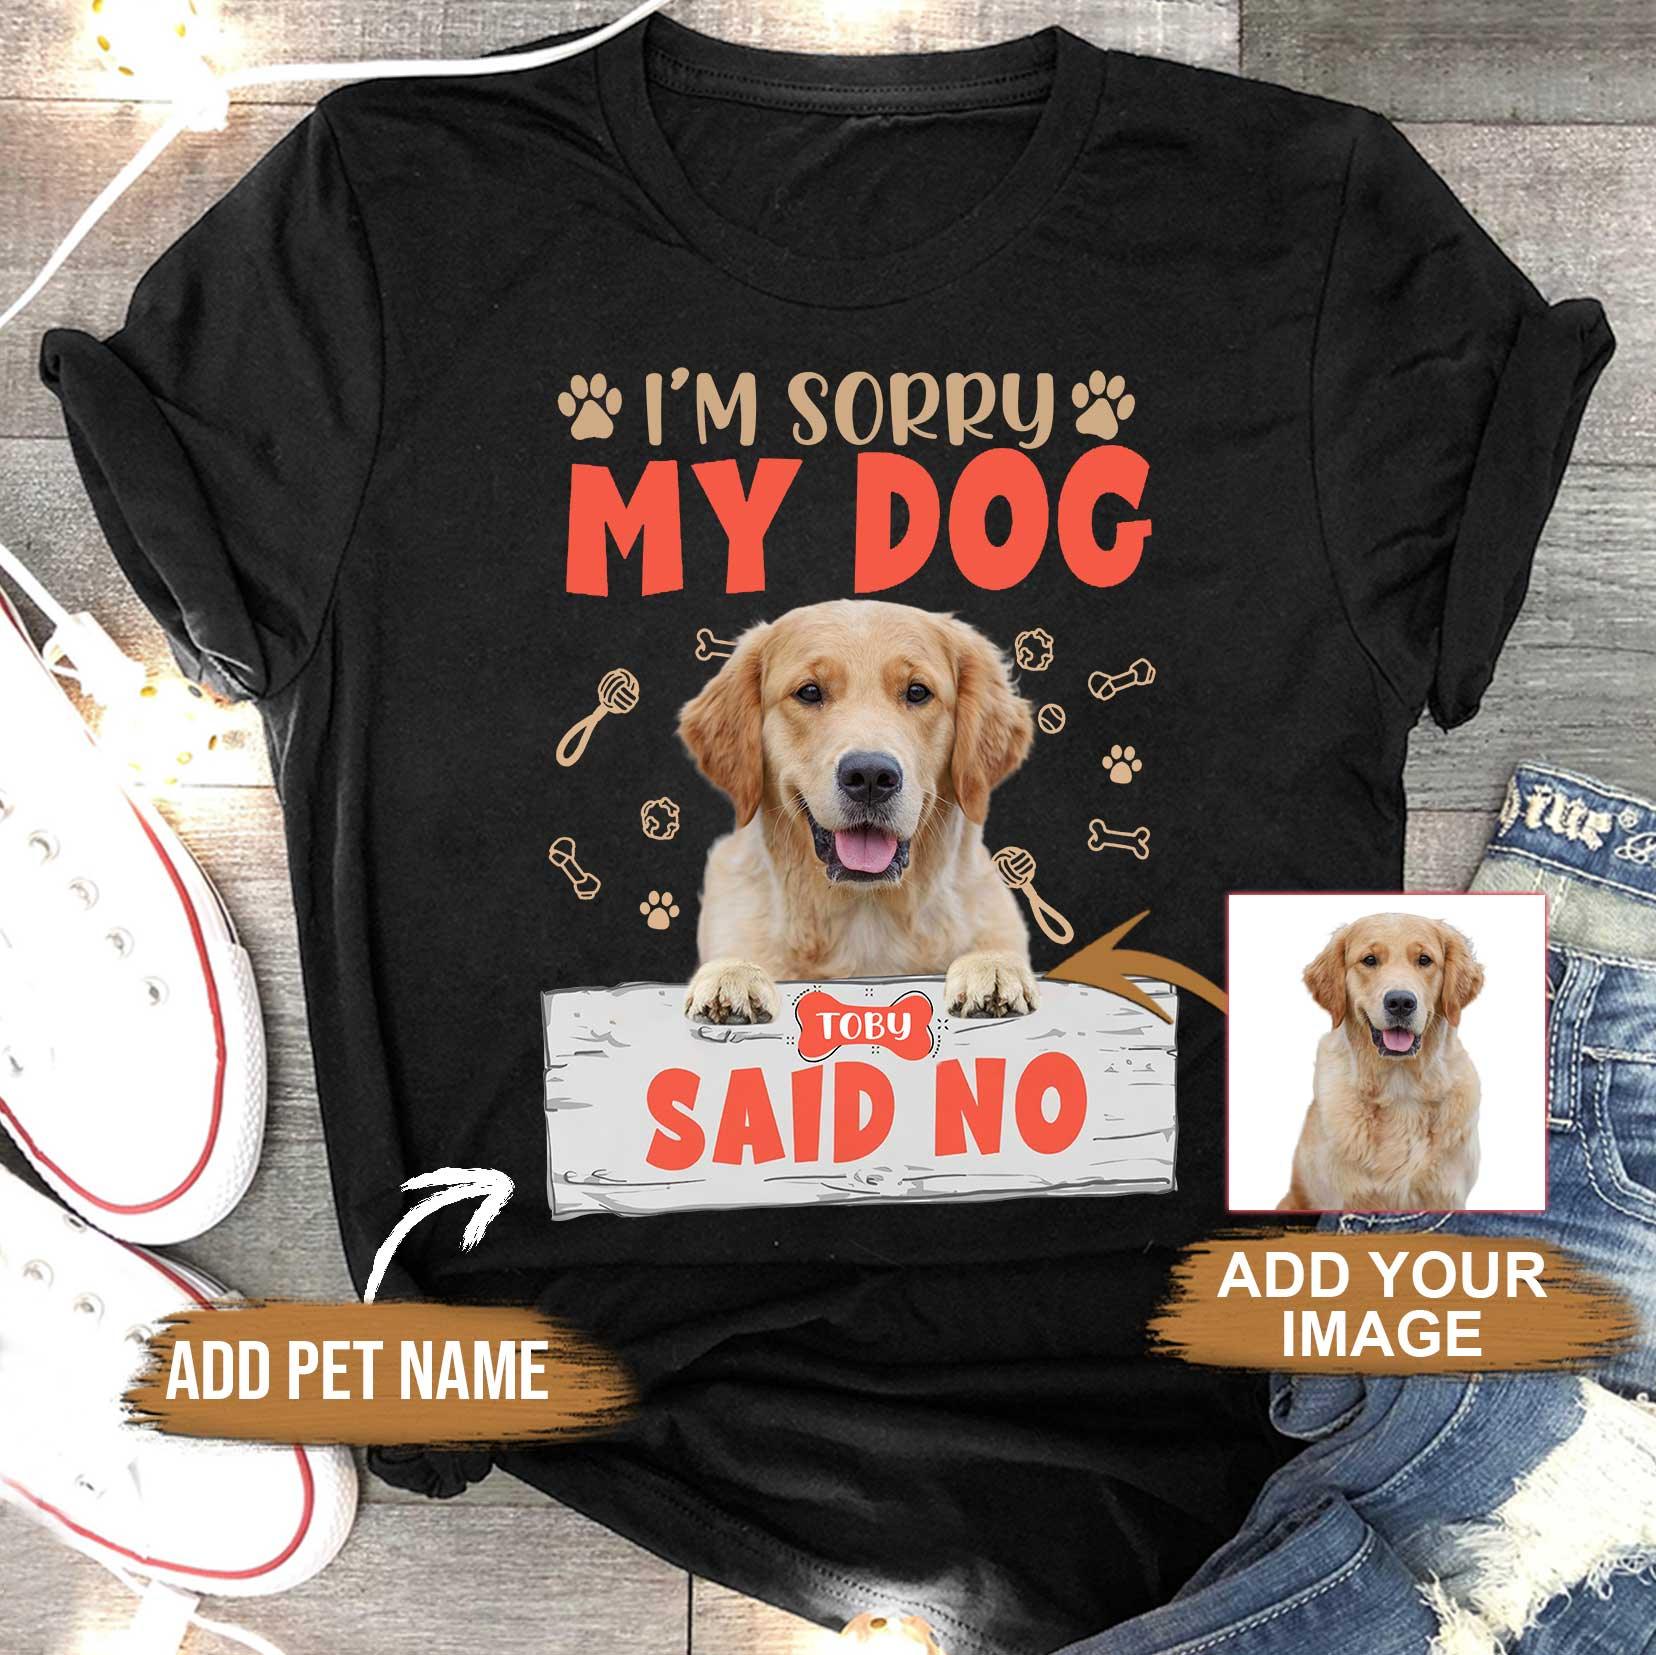 Custom Pet Dog Unisex T Shirt - Customize Name & Photo I'm Sorry My Dog Said No Personalized Unisex T Shirt - Gift For Dog Lovers, Friend, Family - Amzanimalsgift